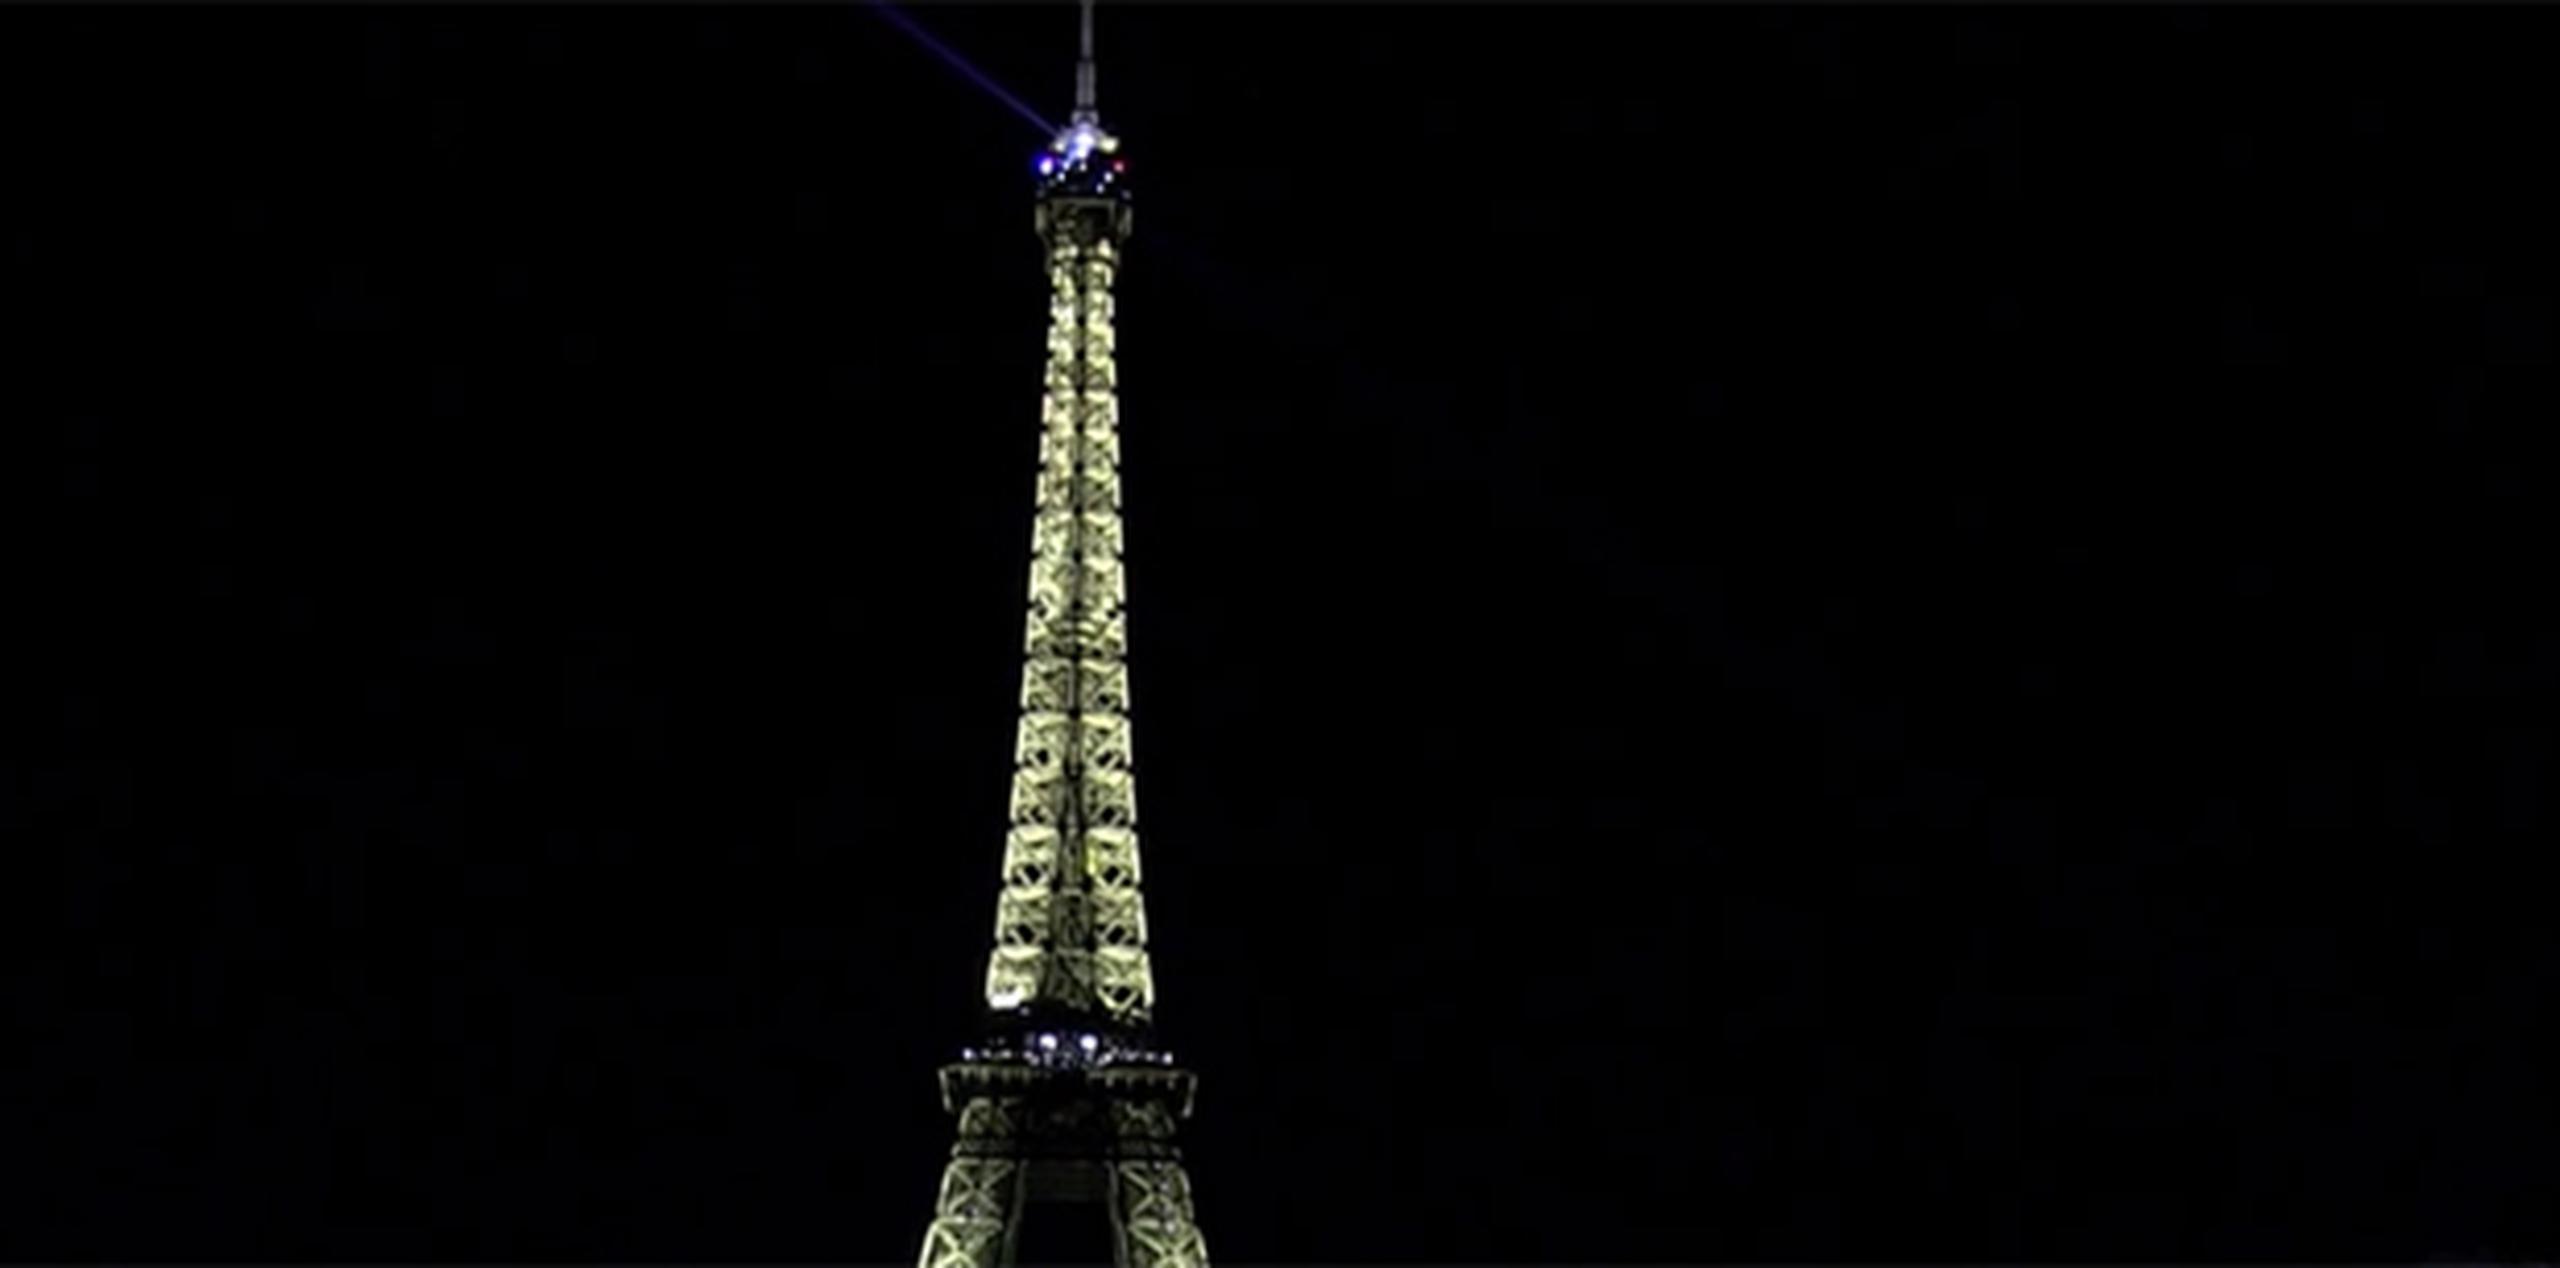 El presidente Francois Hollande ordenó que las banderas ondearan a media asta y la Torre Eiffel Tower apagara sus luces, dejando a los turistas en la oscuridad. (RT)